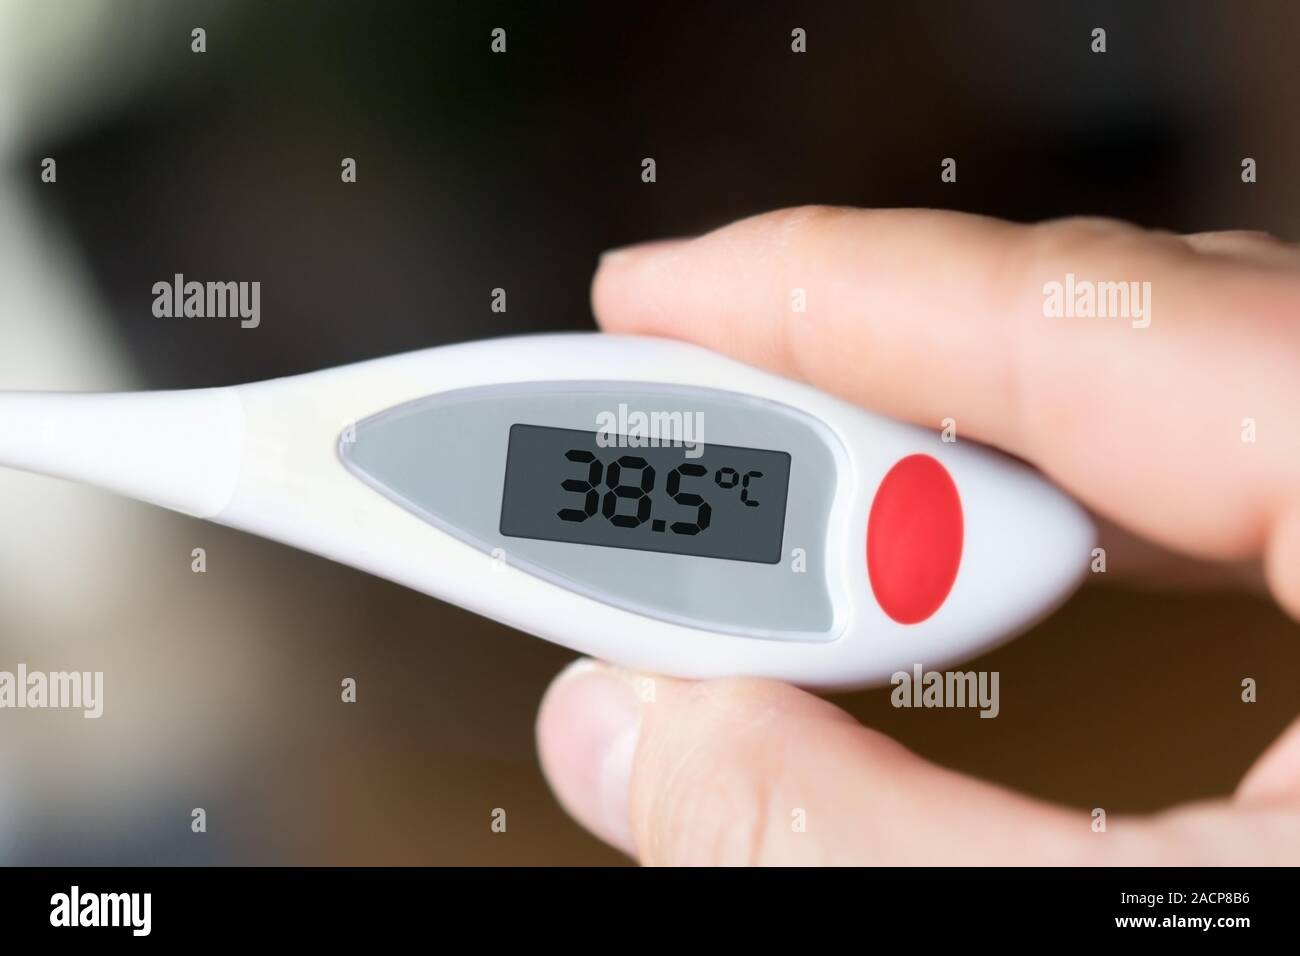 Immagine di una febbre termometro che indica il 38,5 gradi Celsius Foto  stock - Alamy